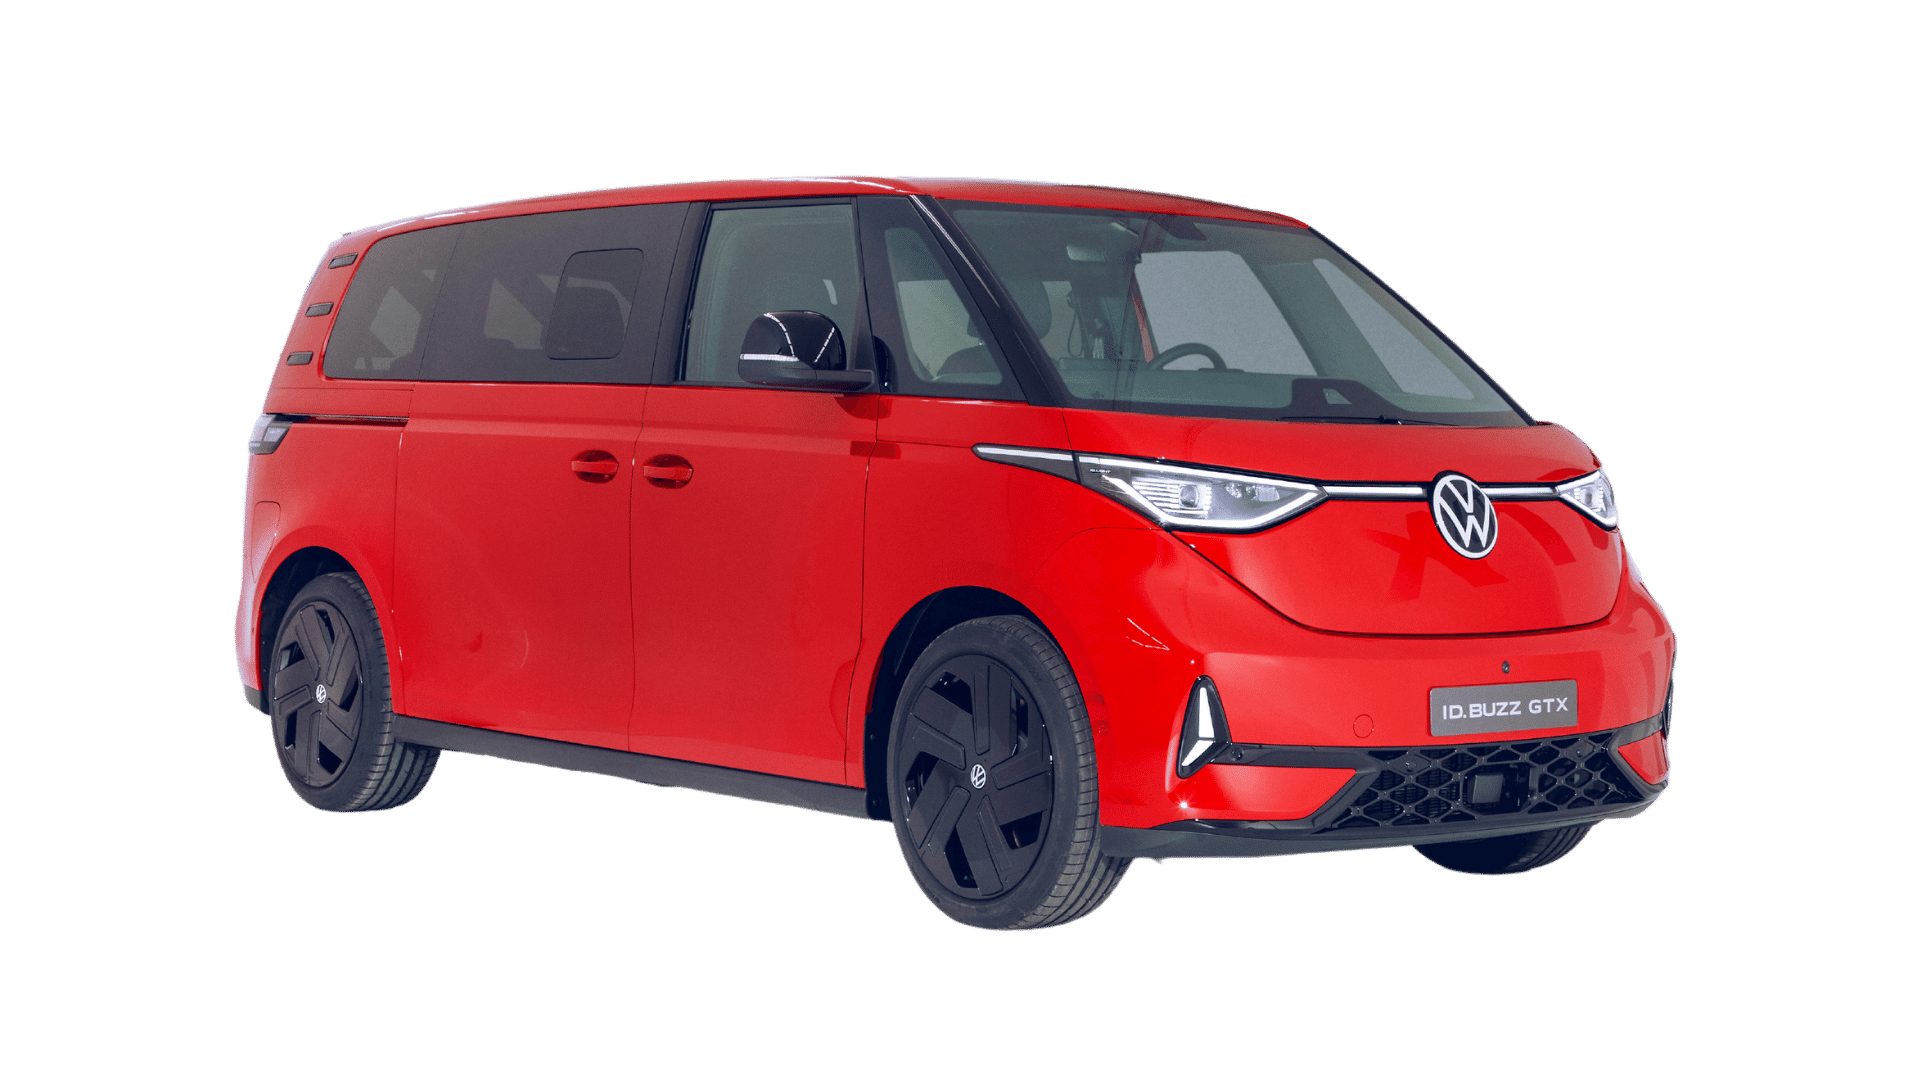 Borne de recharge Volkswagen ID Buzz GTX